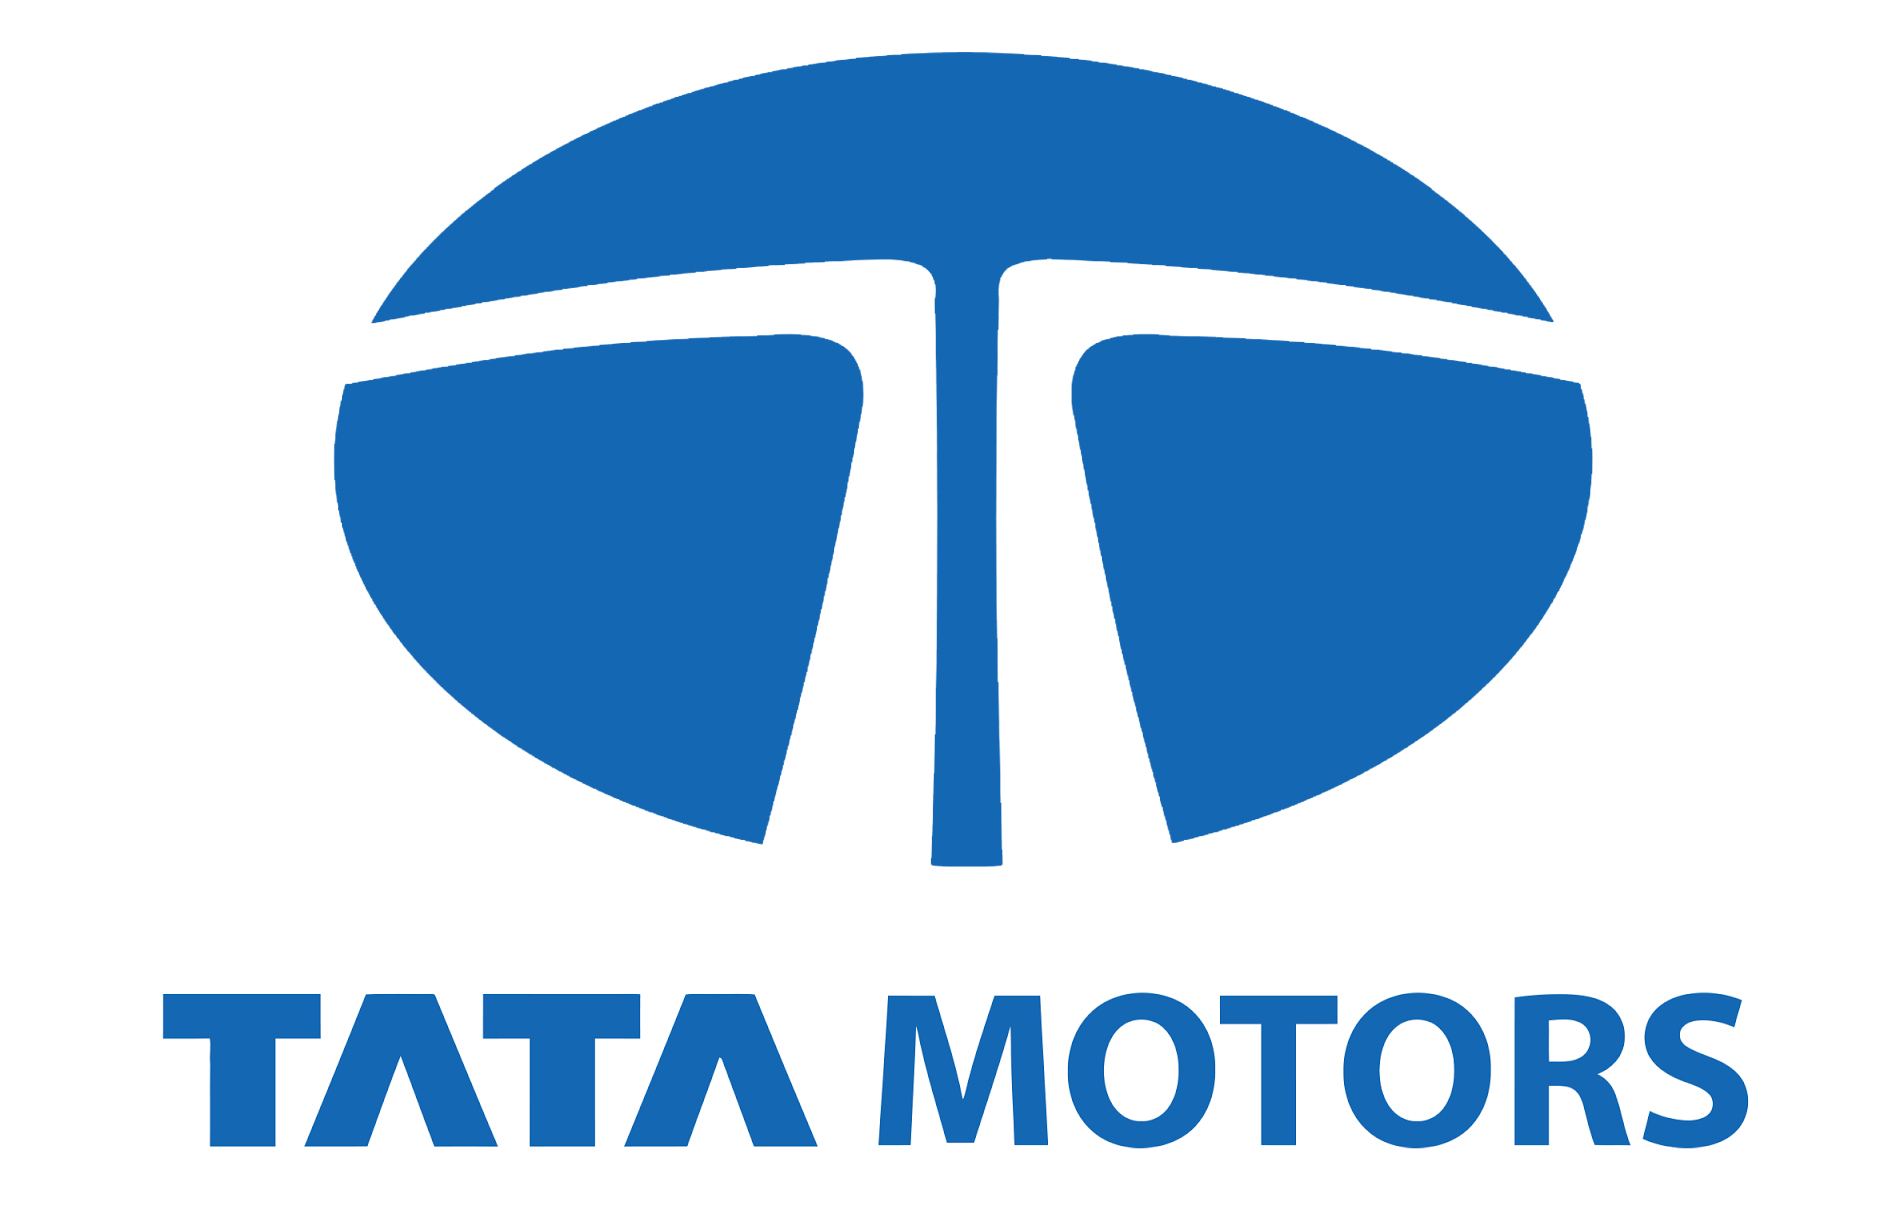 Tata Motors Cars Service Centre - Society Motors - Logo